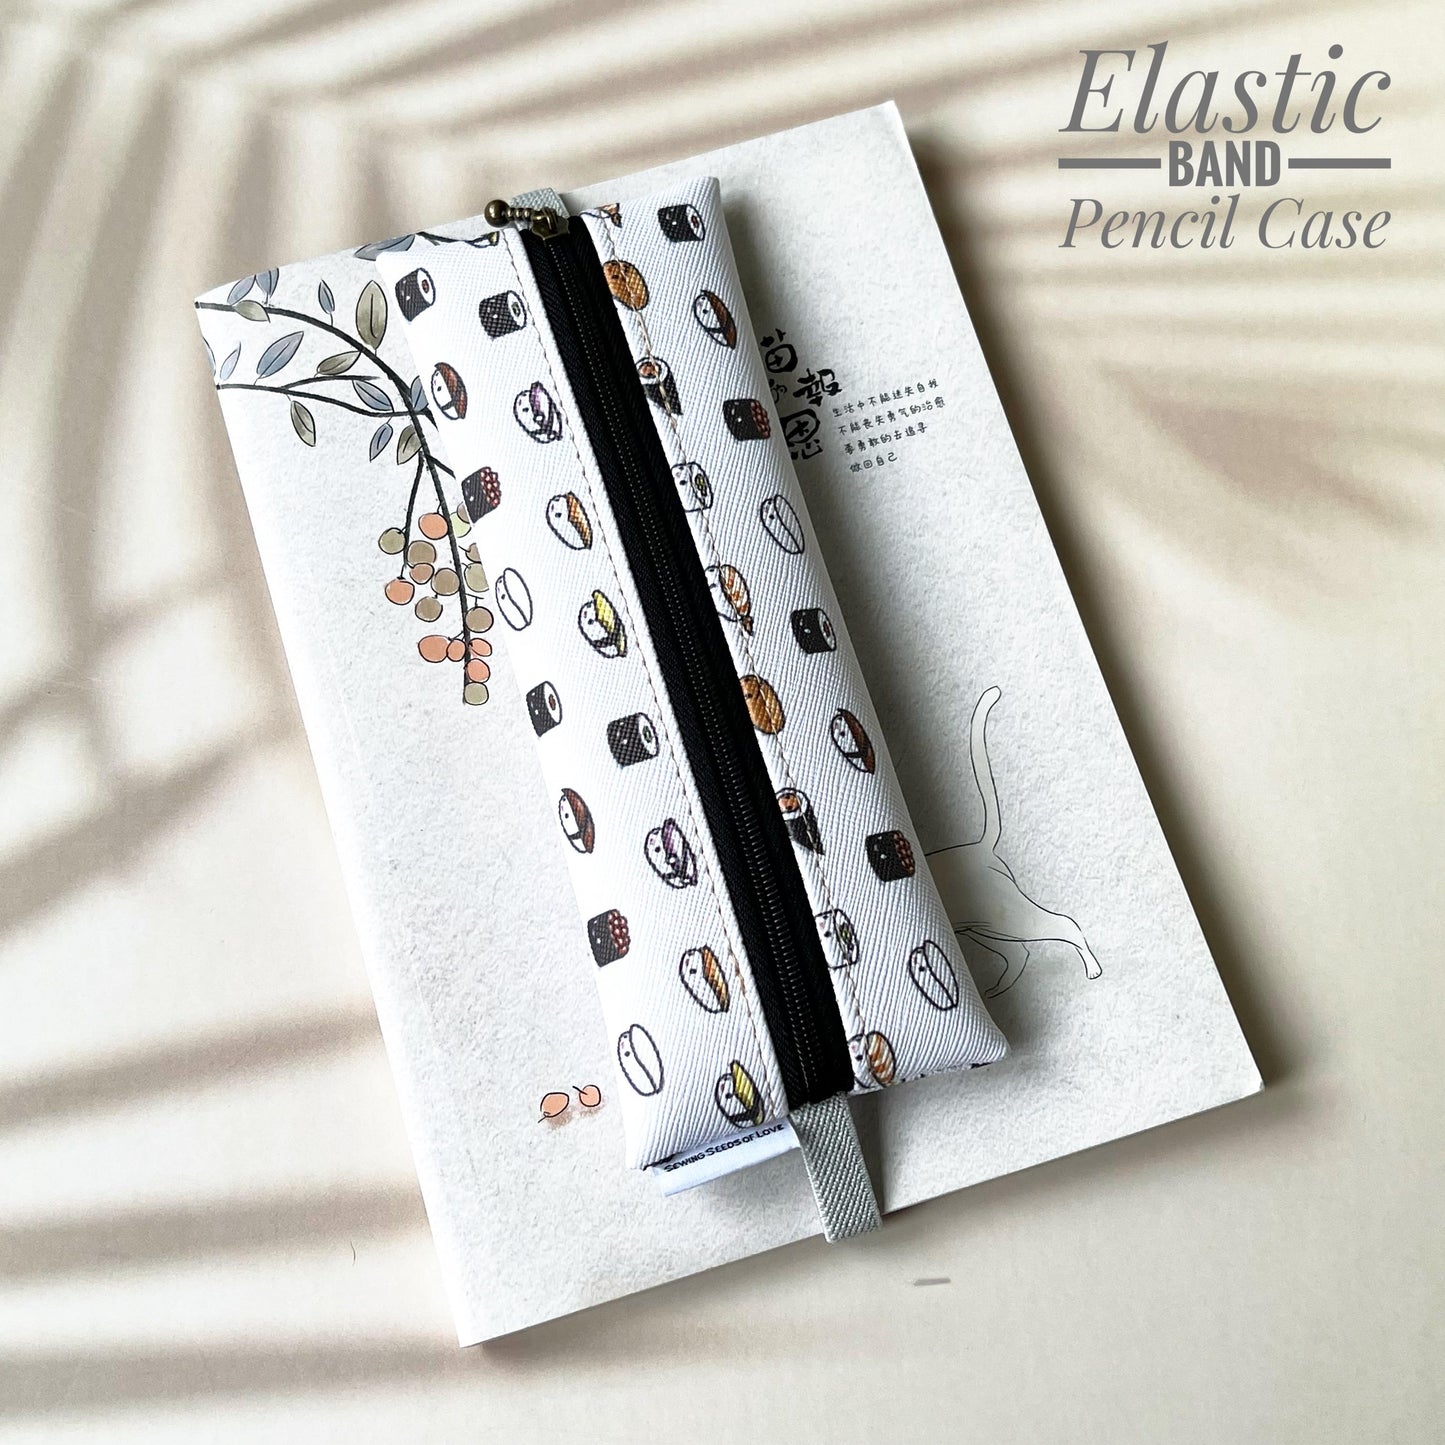 Elastic Band Pencil Case - EBPC05